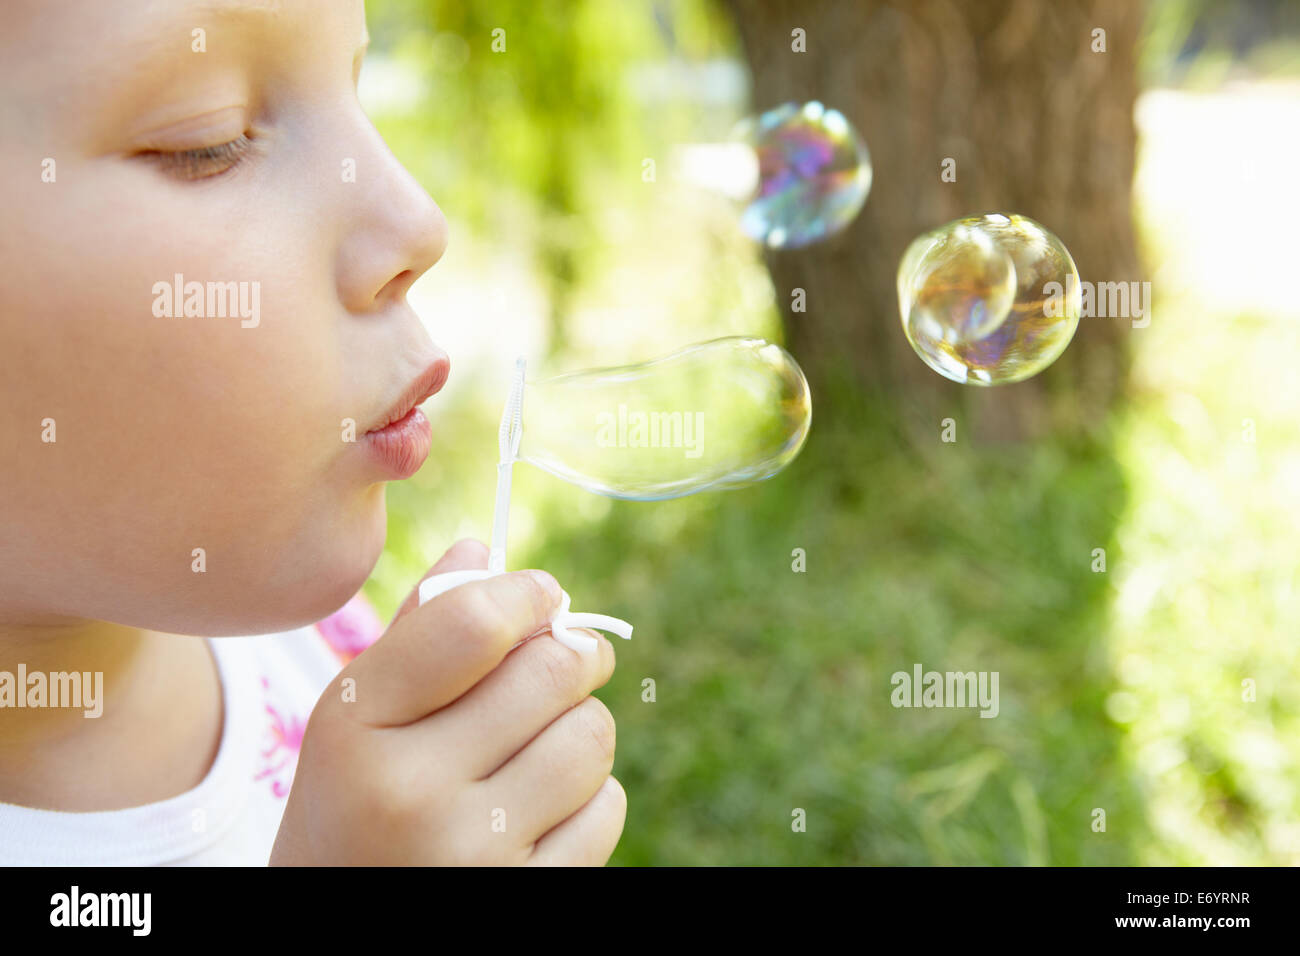 Kleines Mädchen bläst Luftblasen im freien Stockfoto